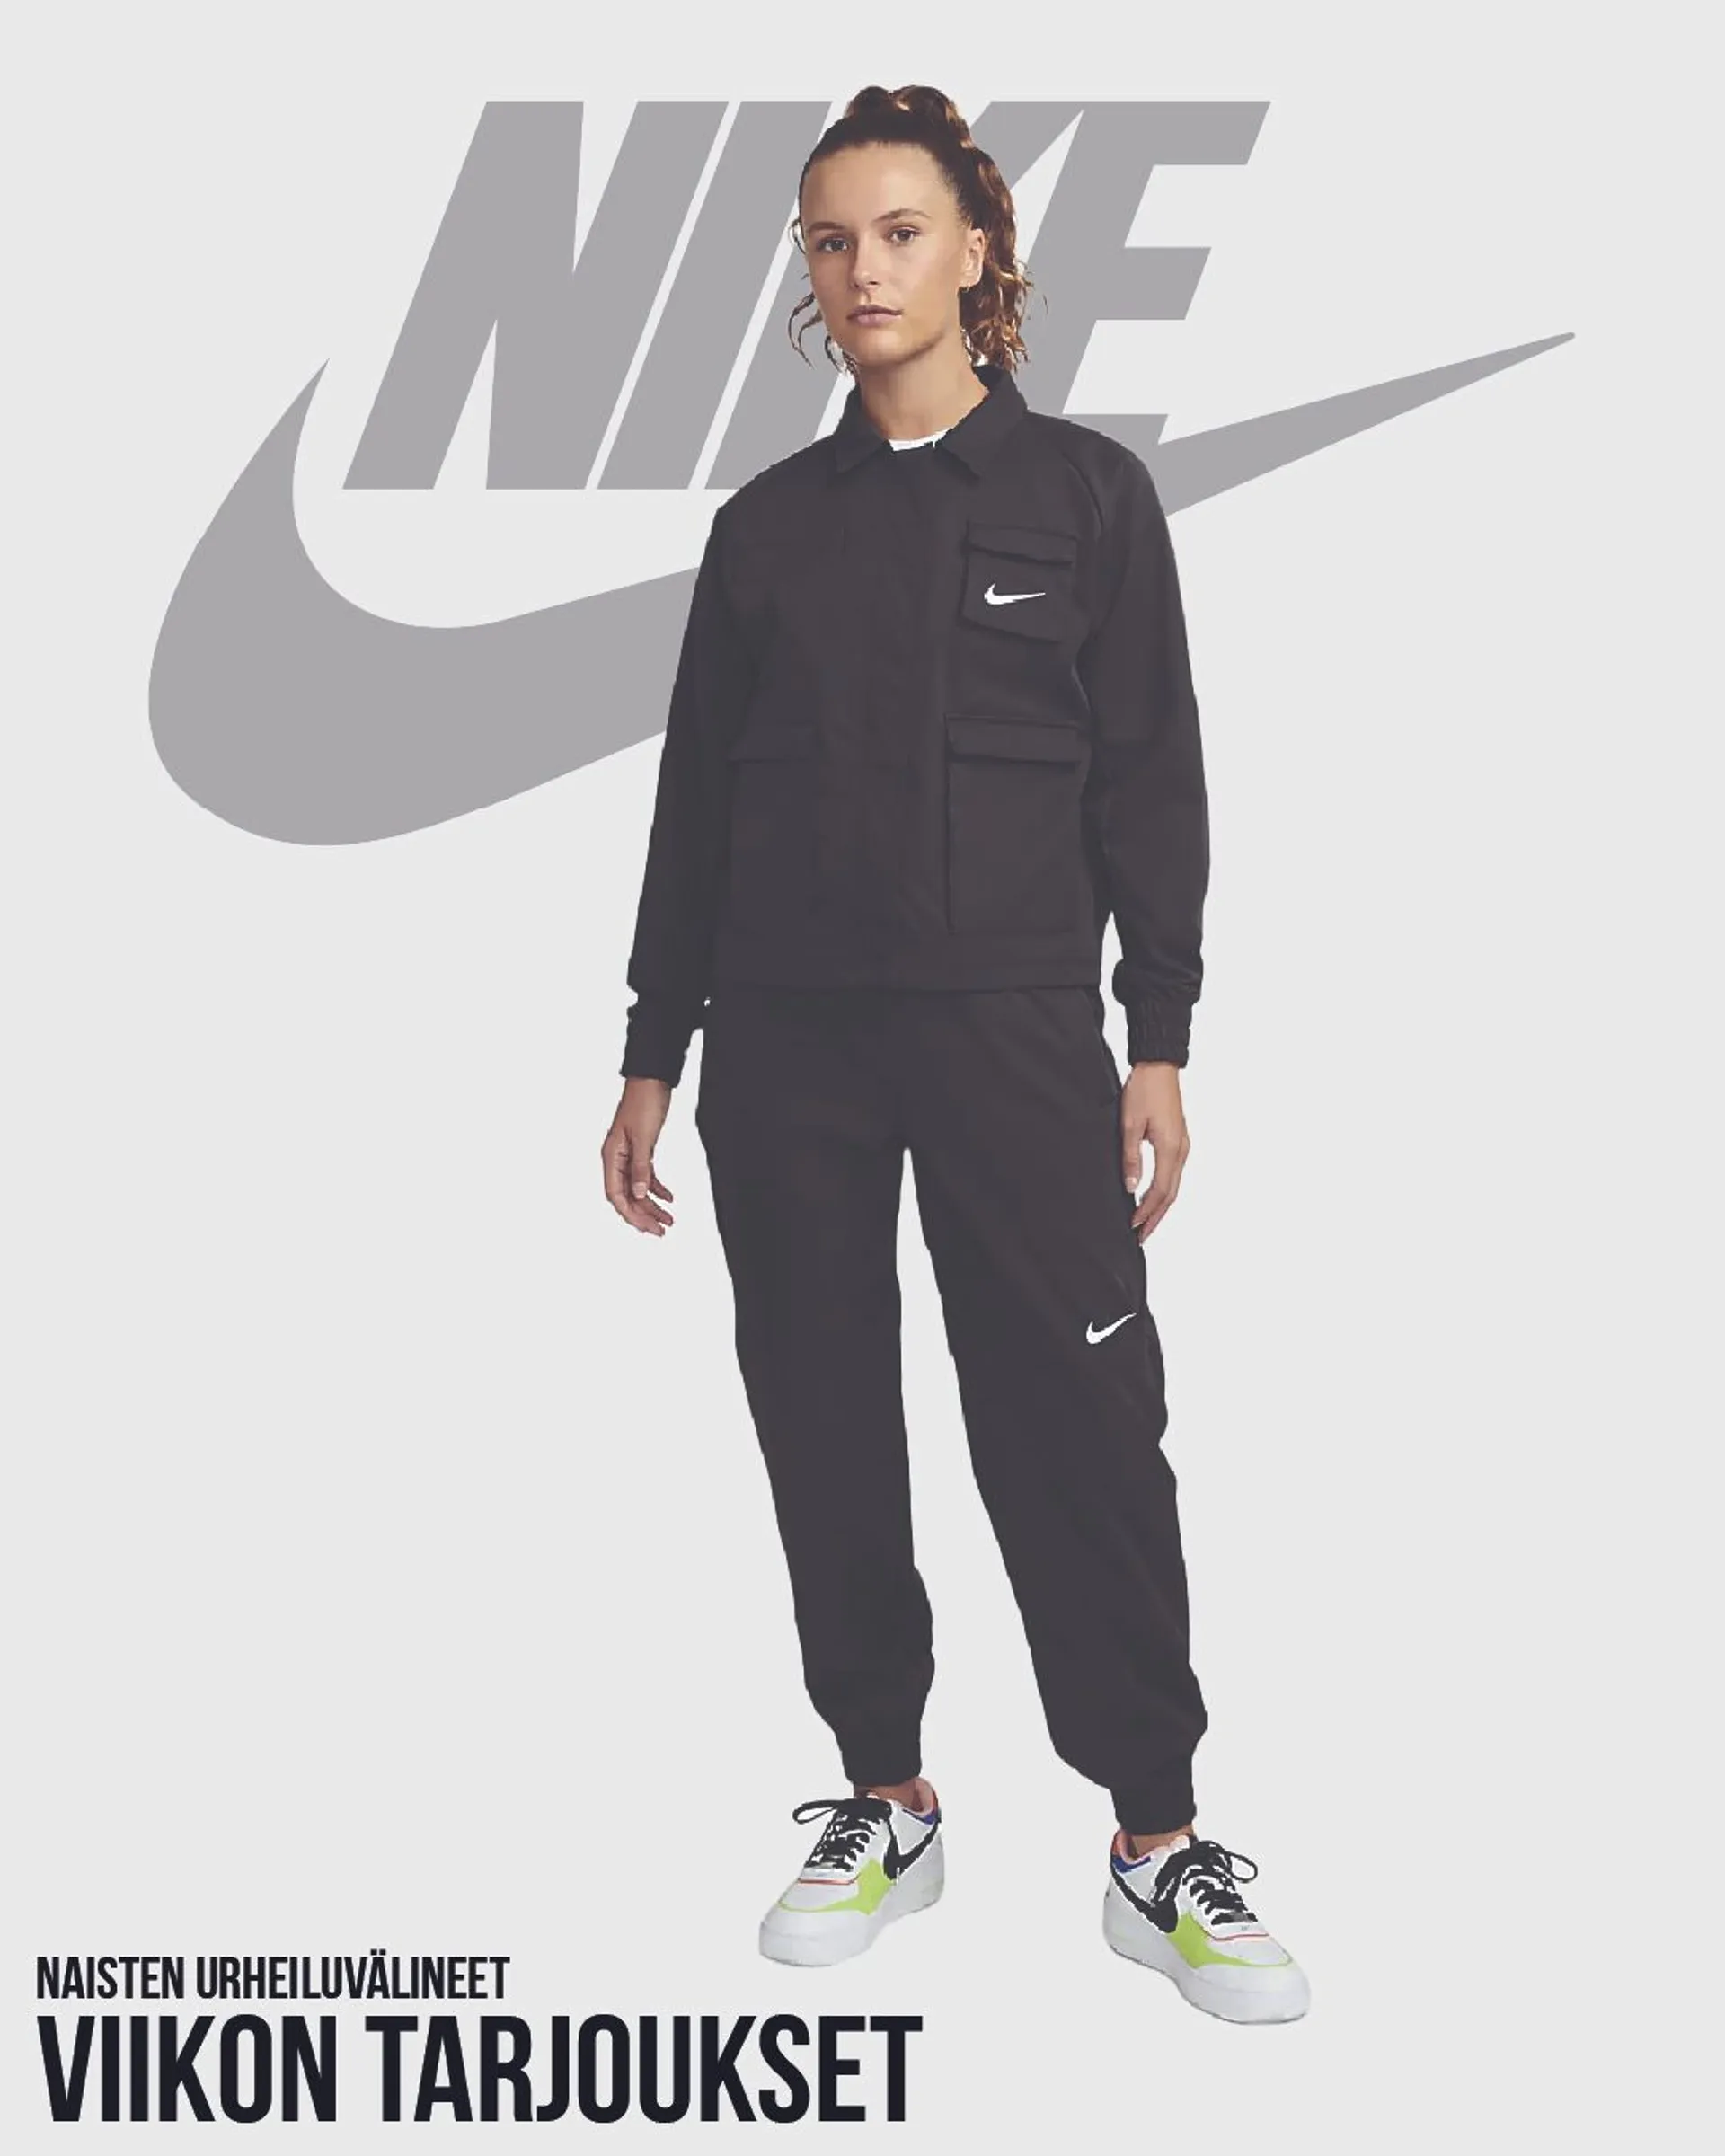 Nike - Naisten urheiluvälineet voimassa alkaen 4. toukokuuta - 9. toukokuuta 2024 - Tarjouslehti sivu 